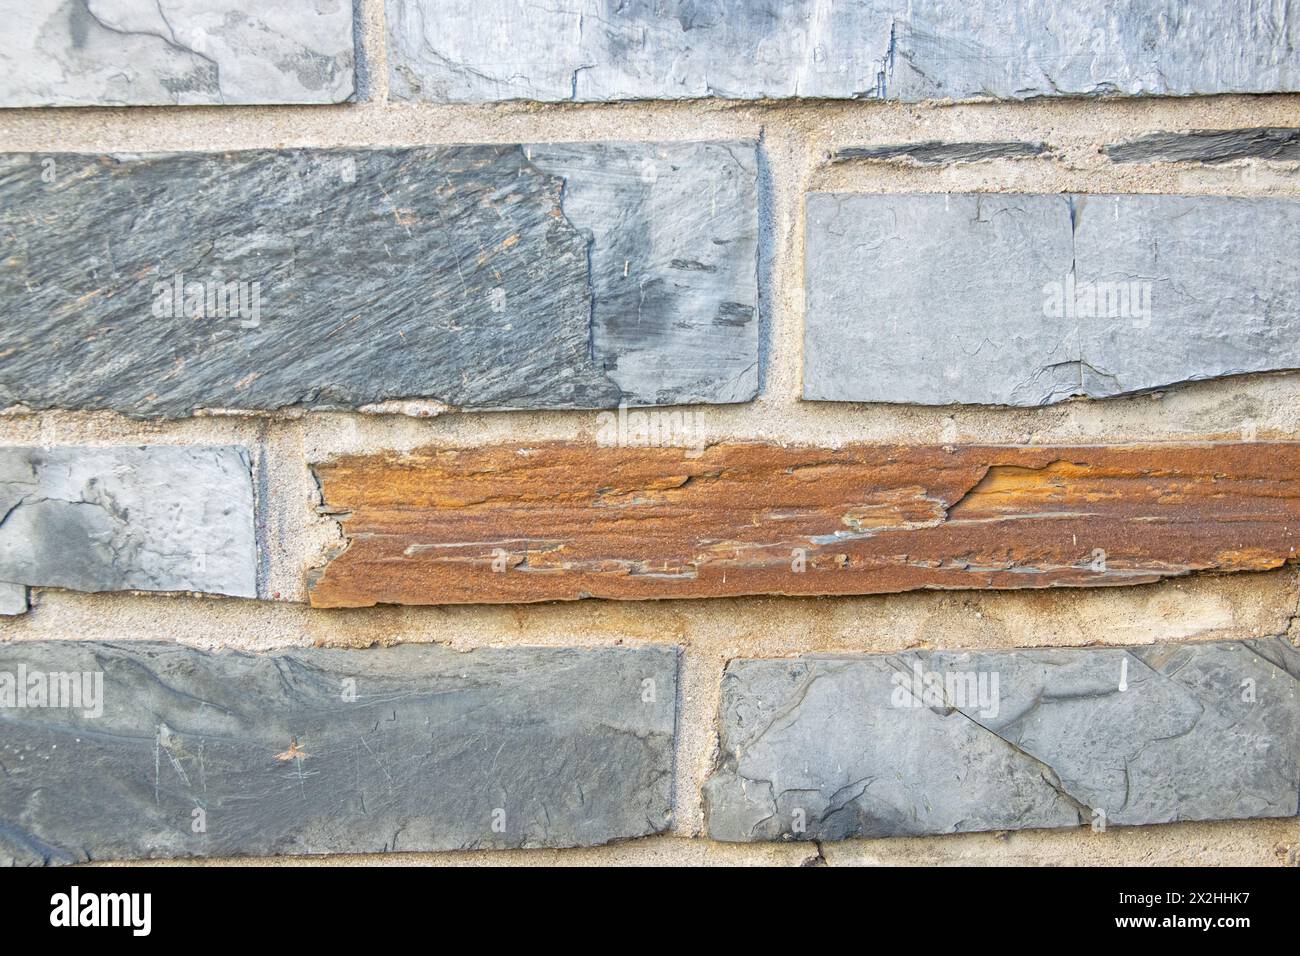 Le mur de pierre structurelle gris de l'ancien bâtiment se compose de vieilles briques sombres. Arrière-plan de la nature. Banque D'Images